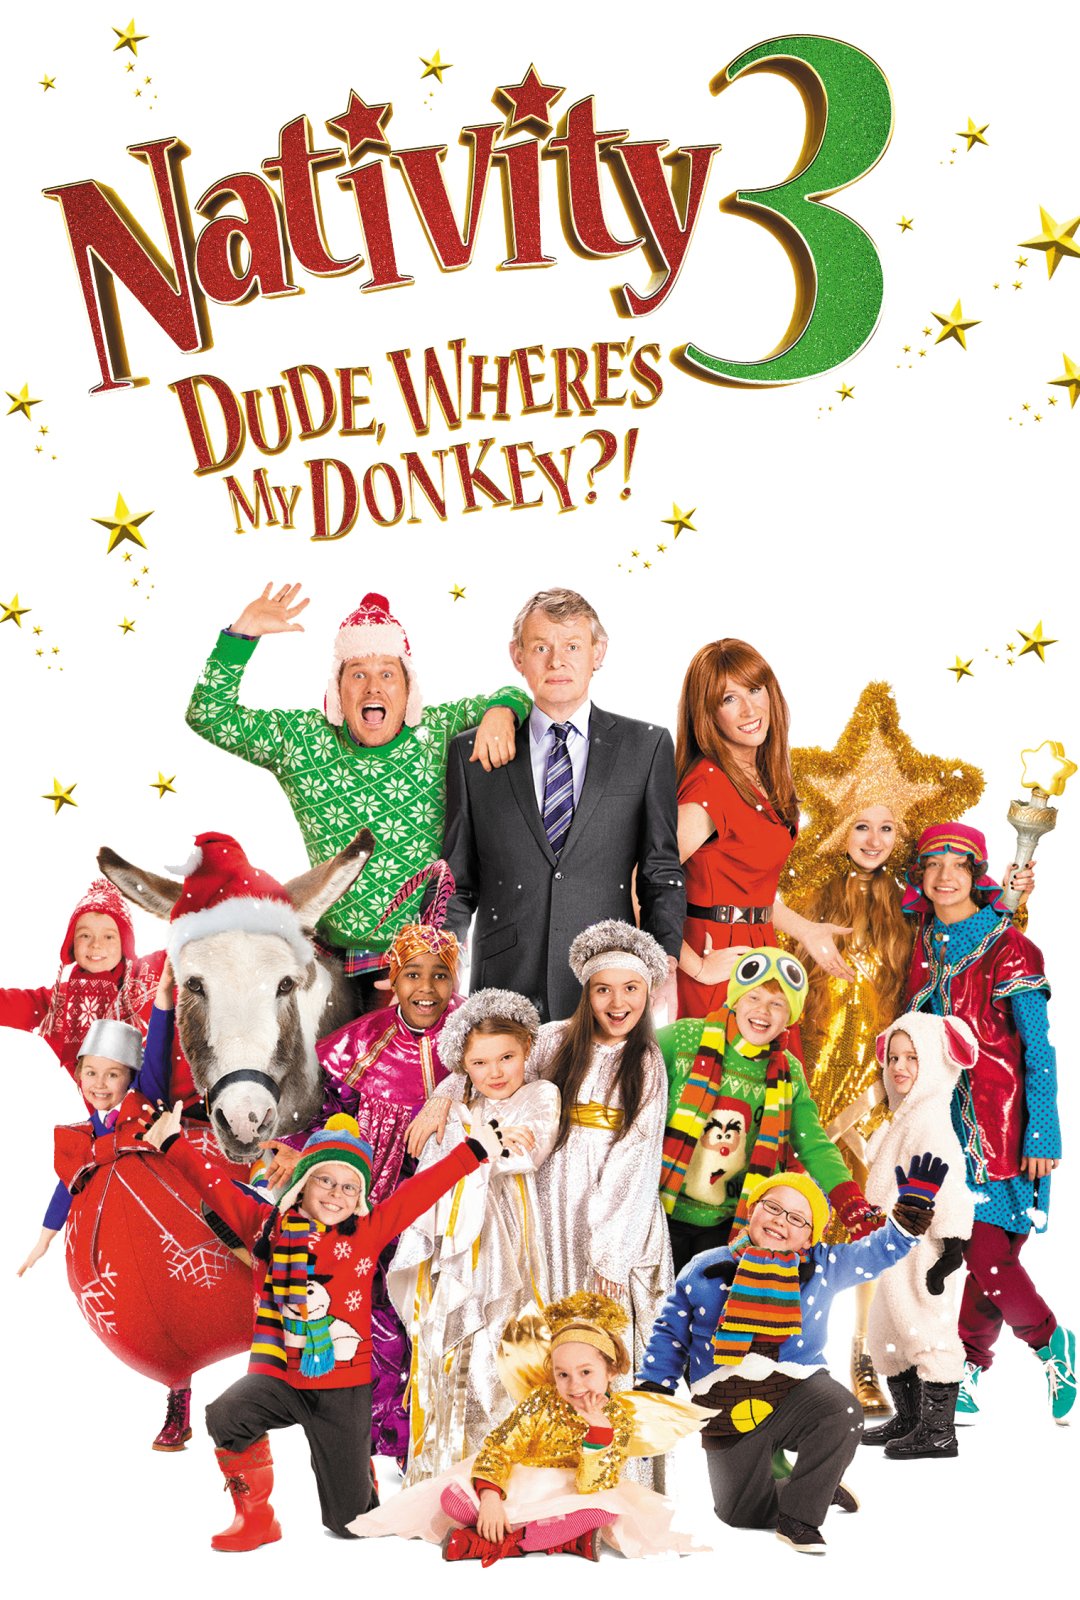 Nativity 3: Dude Where's My Donkey